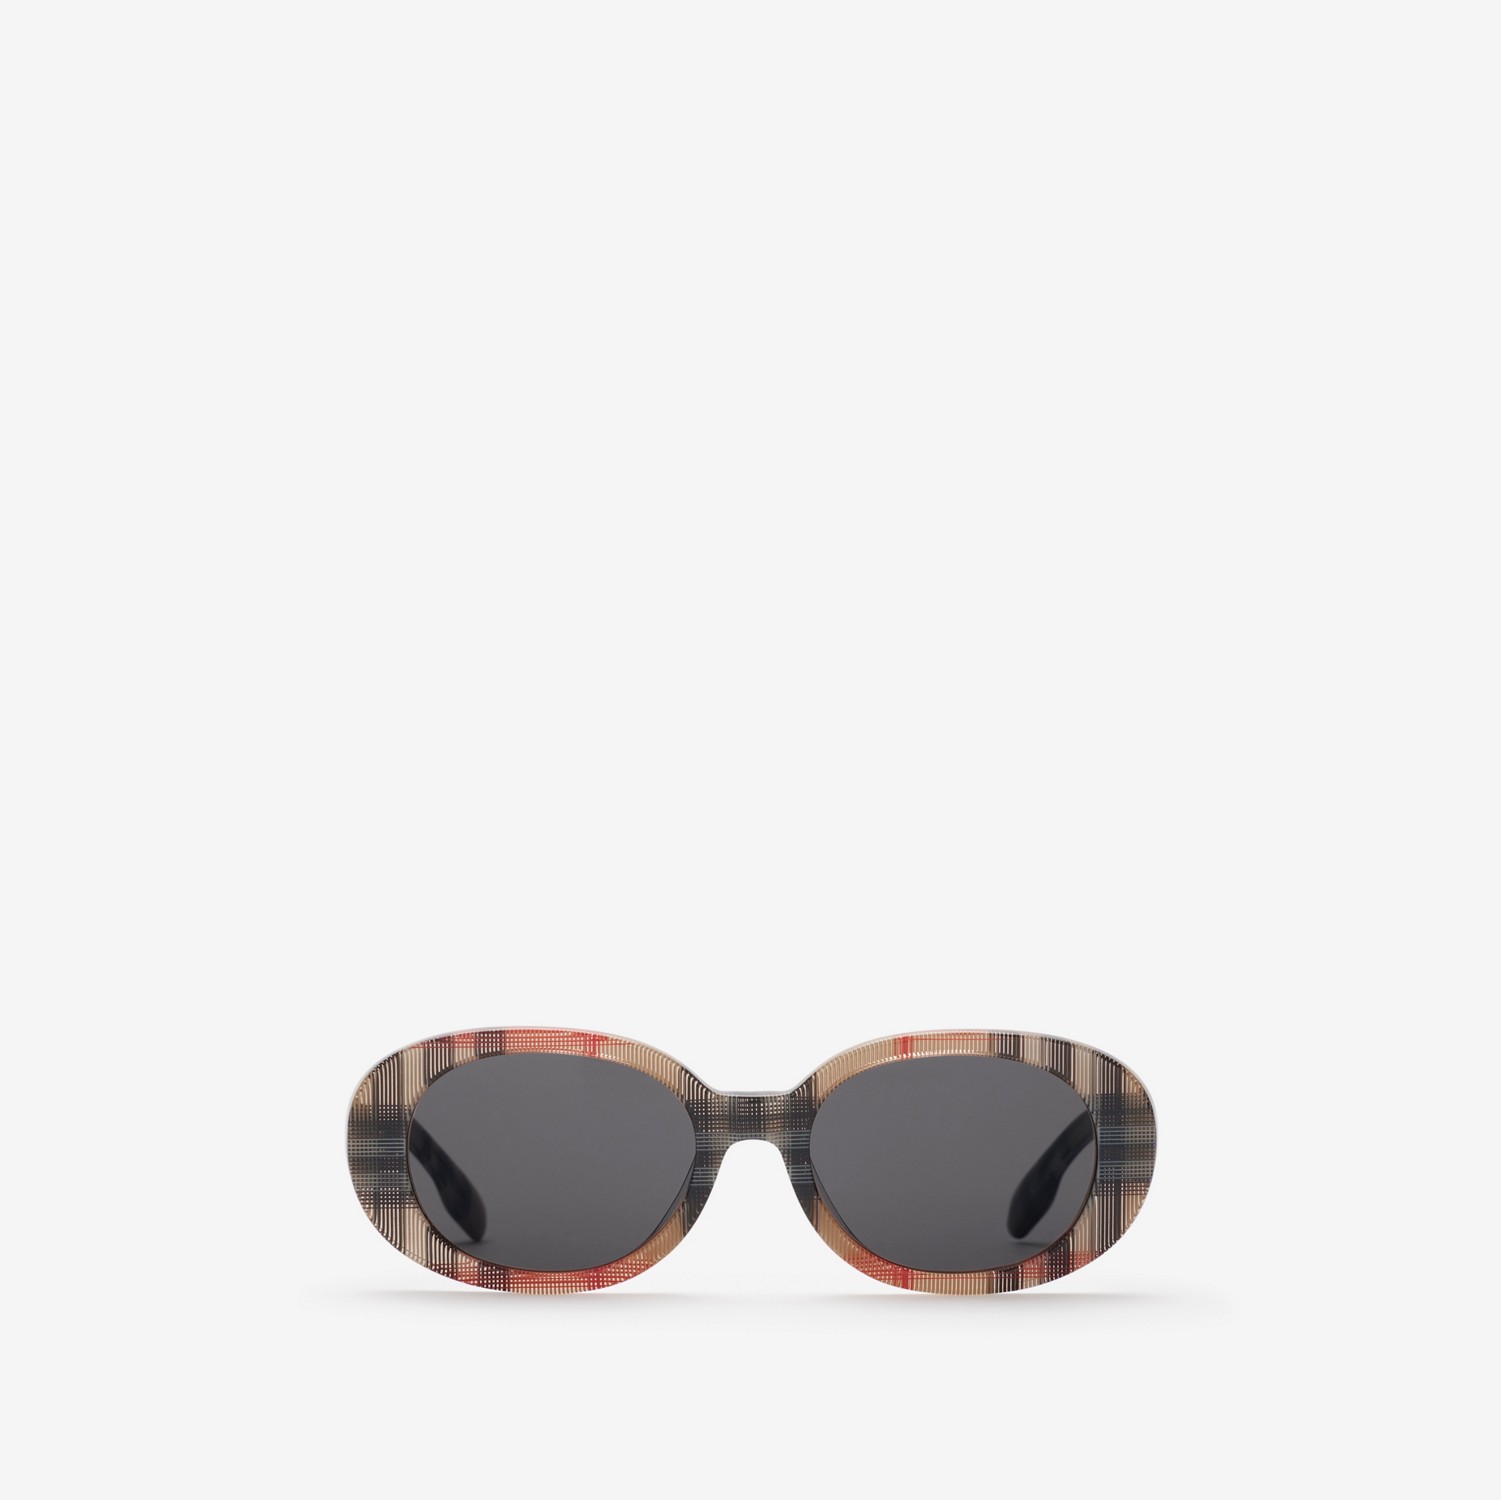 Sonnenbrille mit ovaler Fassung in Check